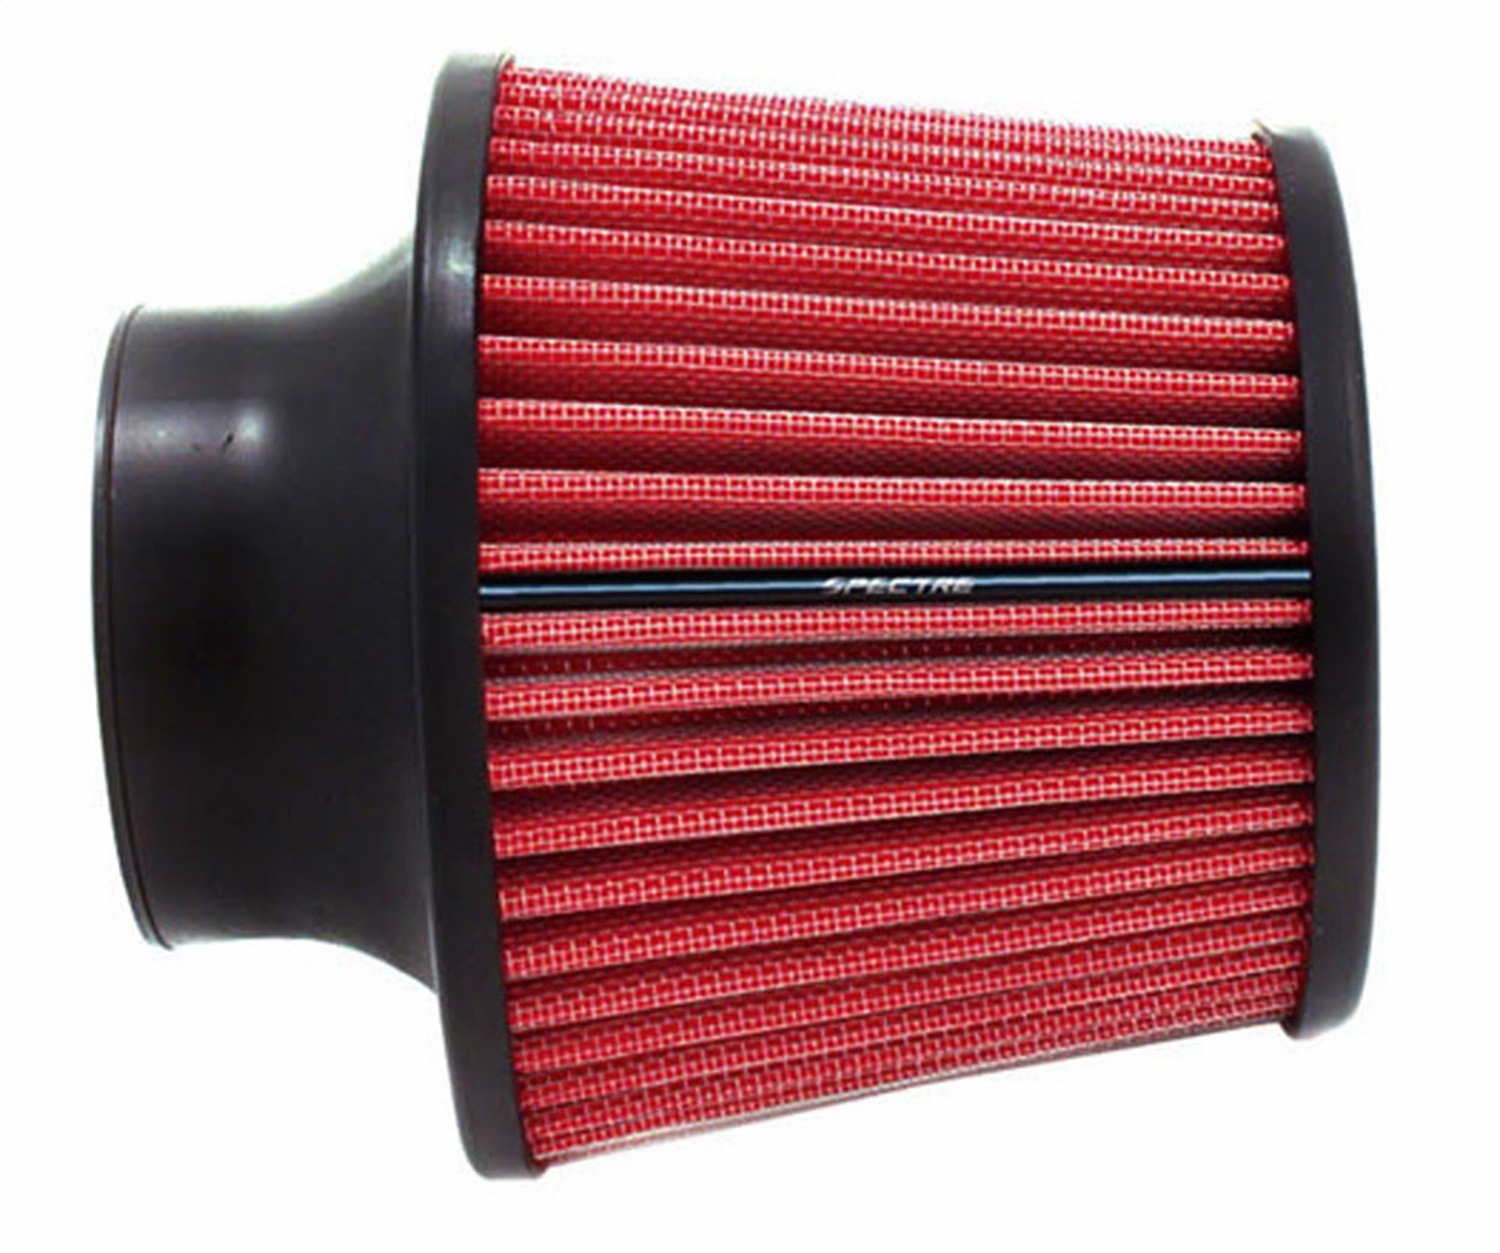 Открытый воздушный фильтр. Ona Air Filter 125 мм. 38242300 Воздушный фильтр. Фильтр автомобильный воздушный инжектор 73 мм High Flow Air Filter. Фильтр red7464.